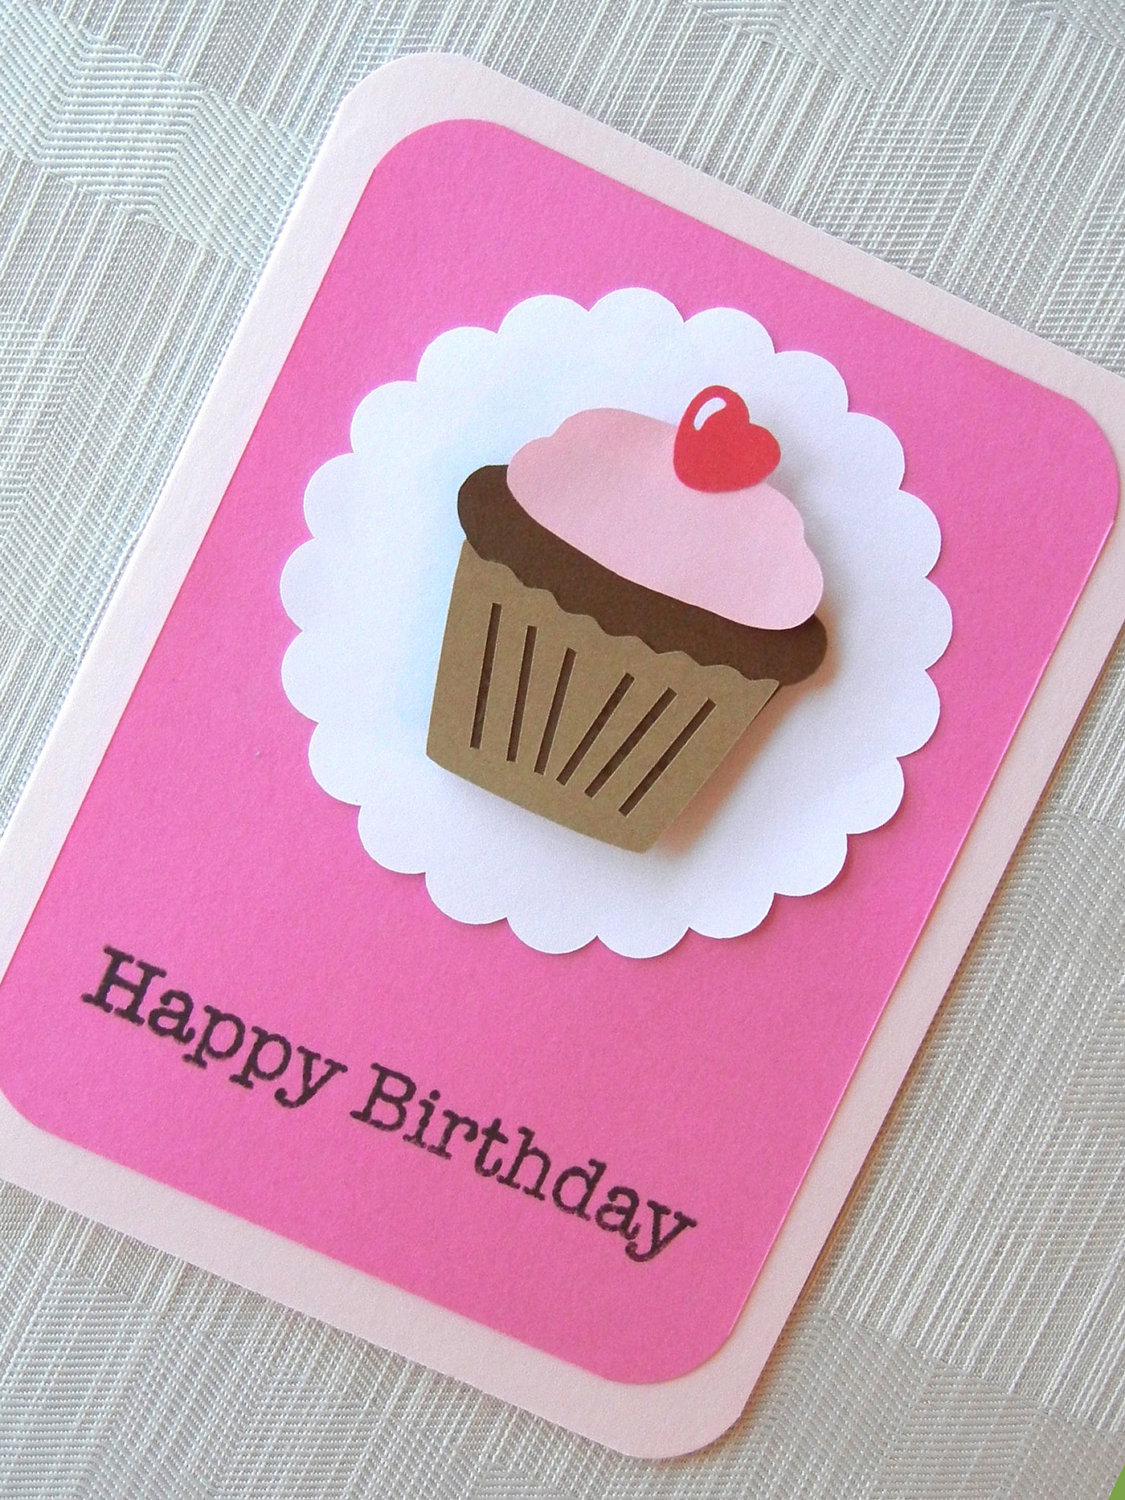 Homemade Birthday Card Idea Easy Diy Birthday Cards Ideas And Designs